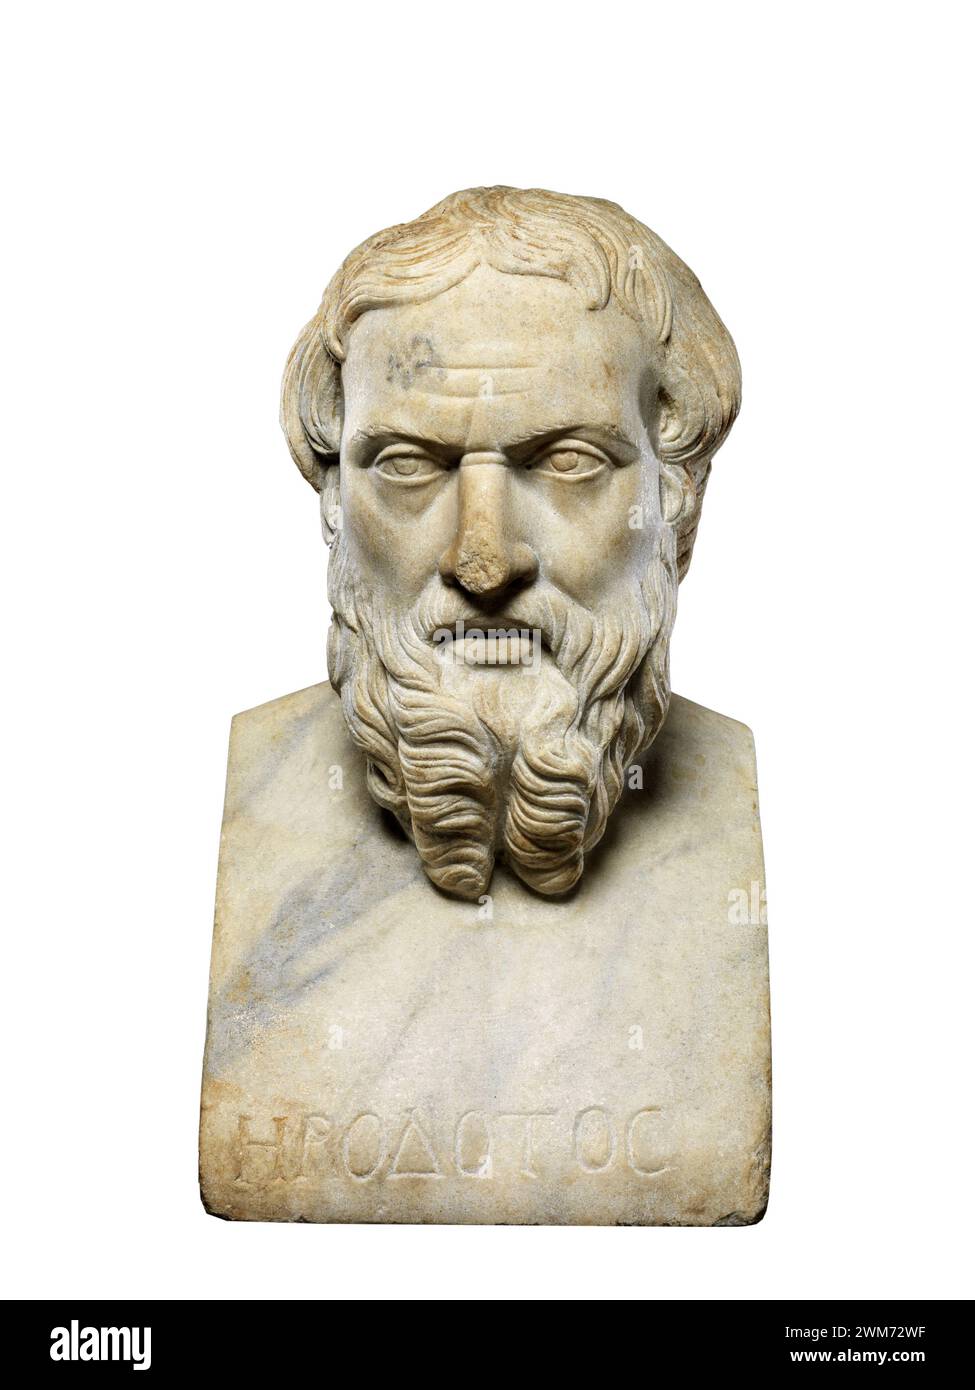 Erodoto. Busto in marmo dello storico e geografo greco, Erodoto (c. 484 – c. 425 a.C.), copia romana, II secolo d.C. In mostra al Met, New York Foto Stock